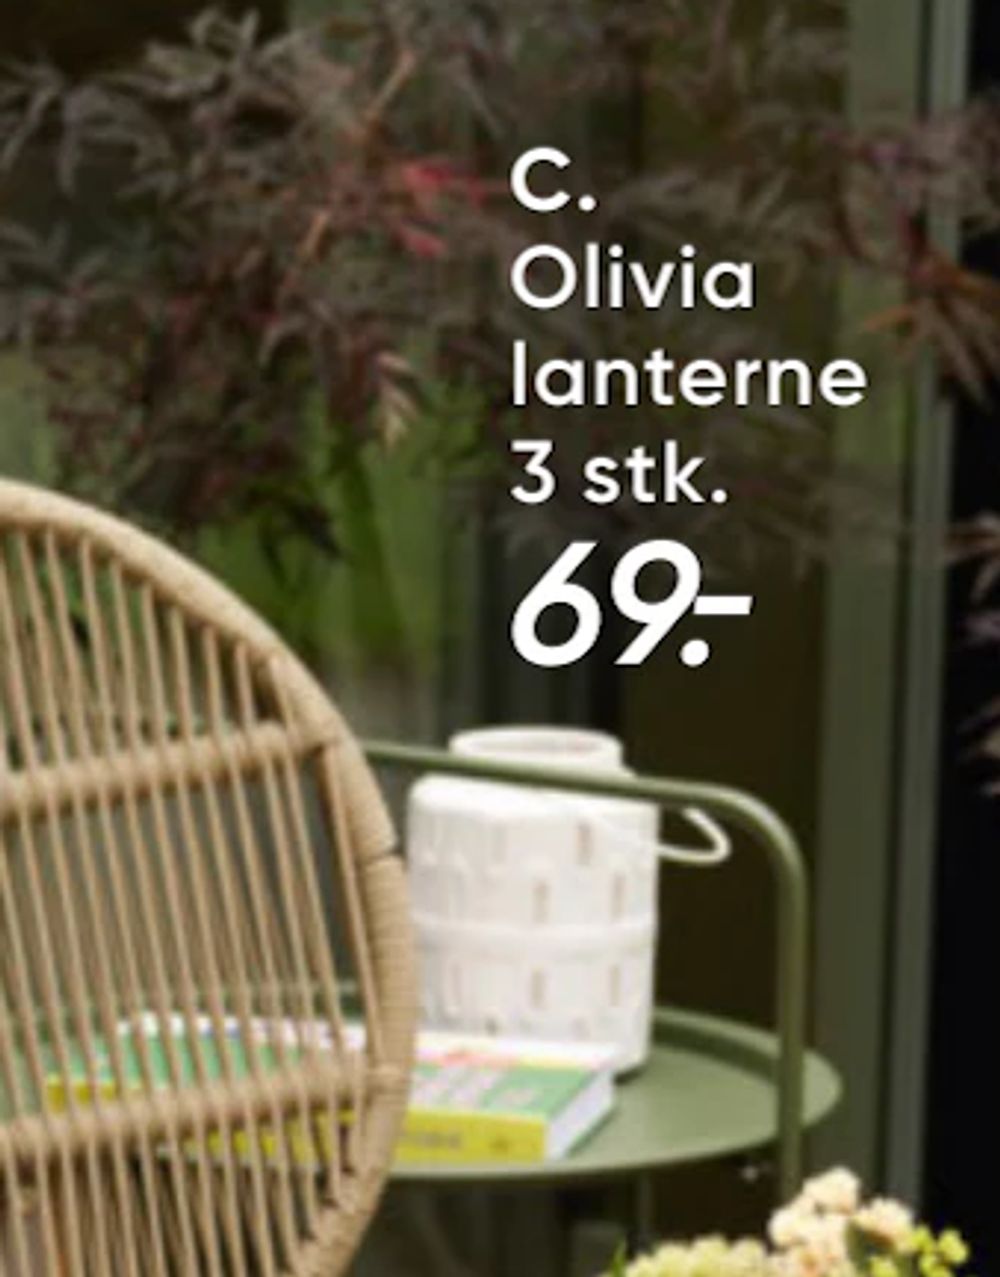 Tilbud på Olivia lanterne fra Bilka til 69 kr.